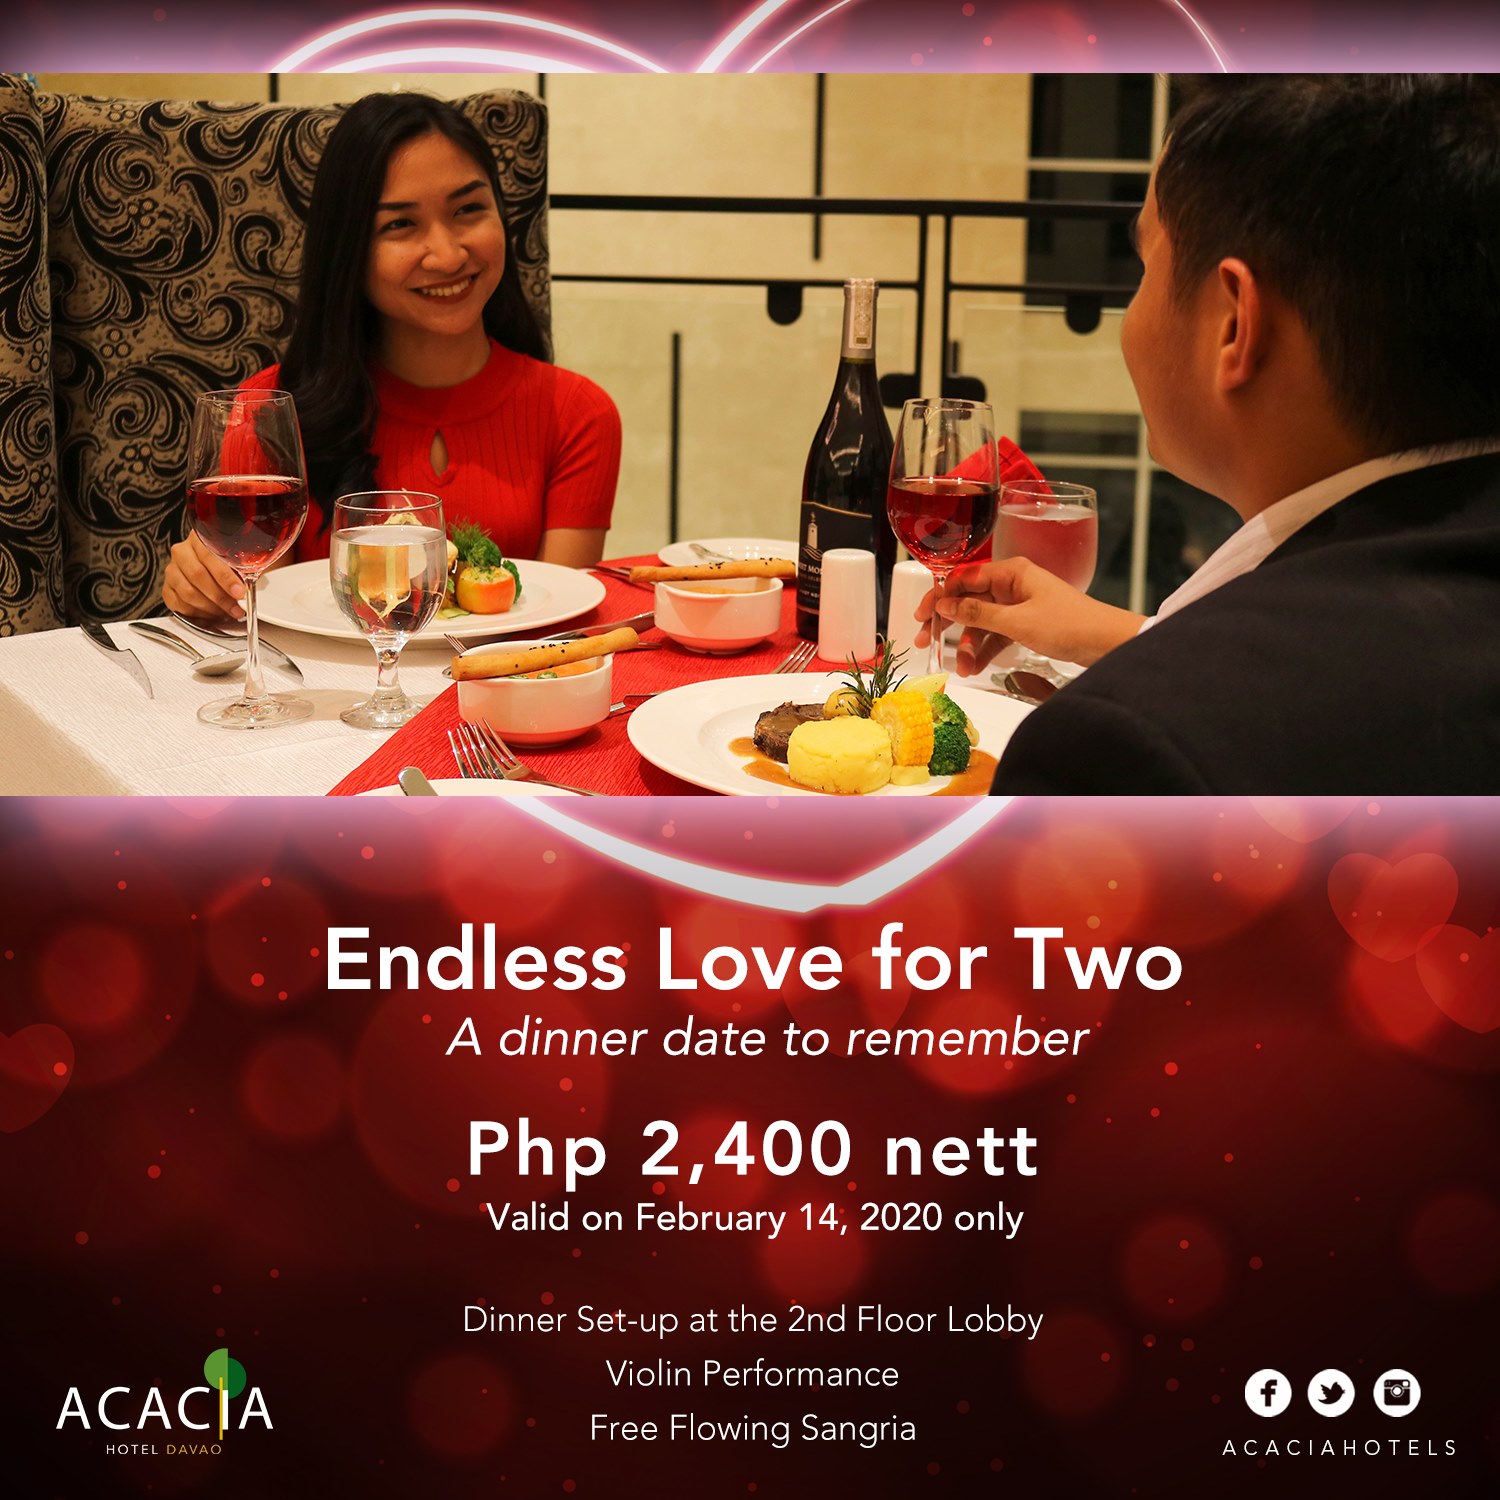 Acacia Hotel Valentines 2020 - My Davao City Events